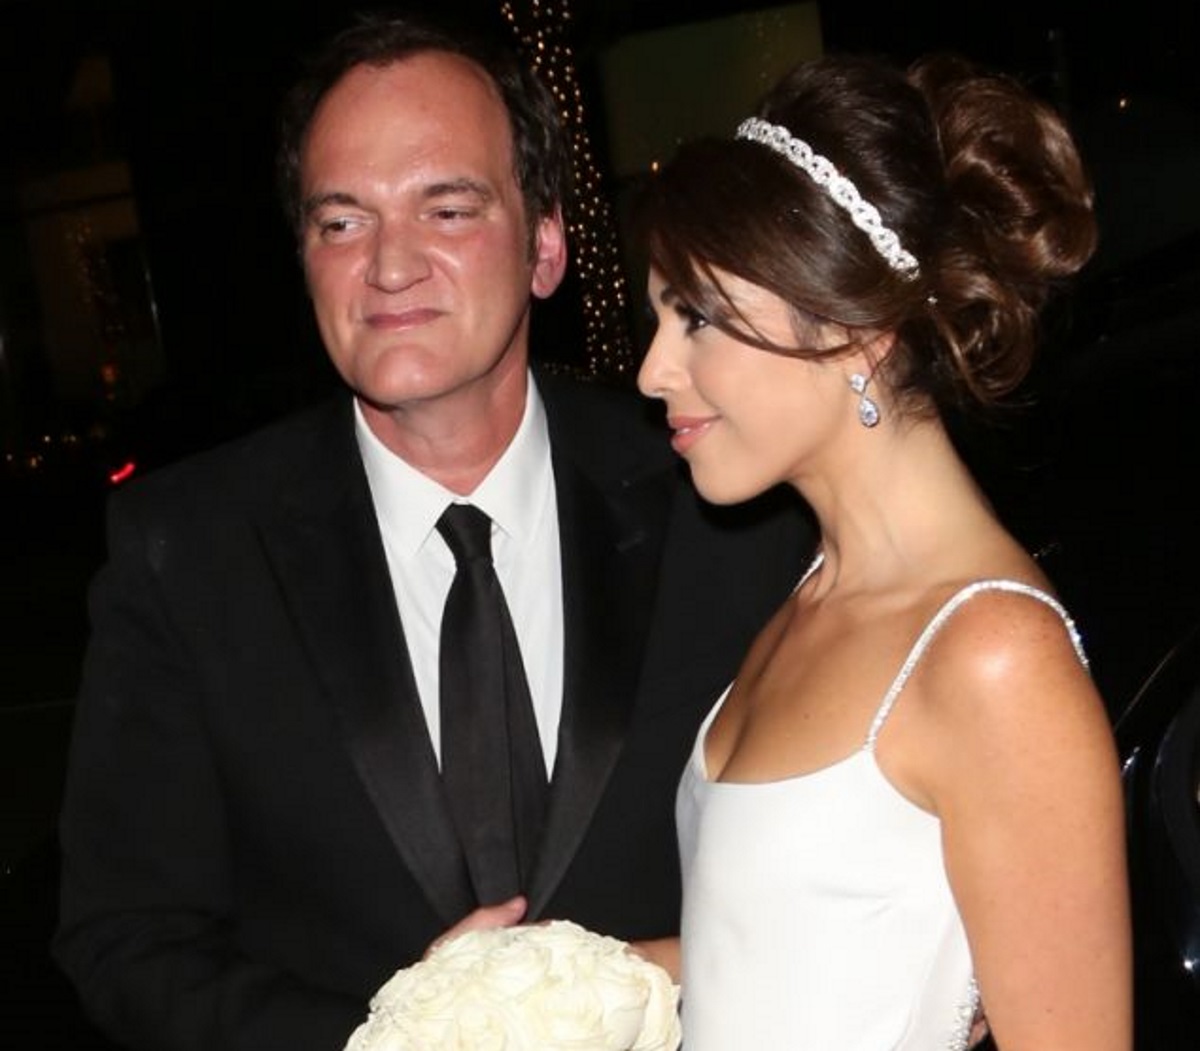 Ο Quentin Tarantino παντρεύτηκε την 35χρονη καλλονή σύντροφό του! [pics]